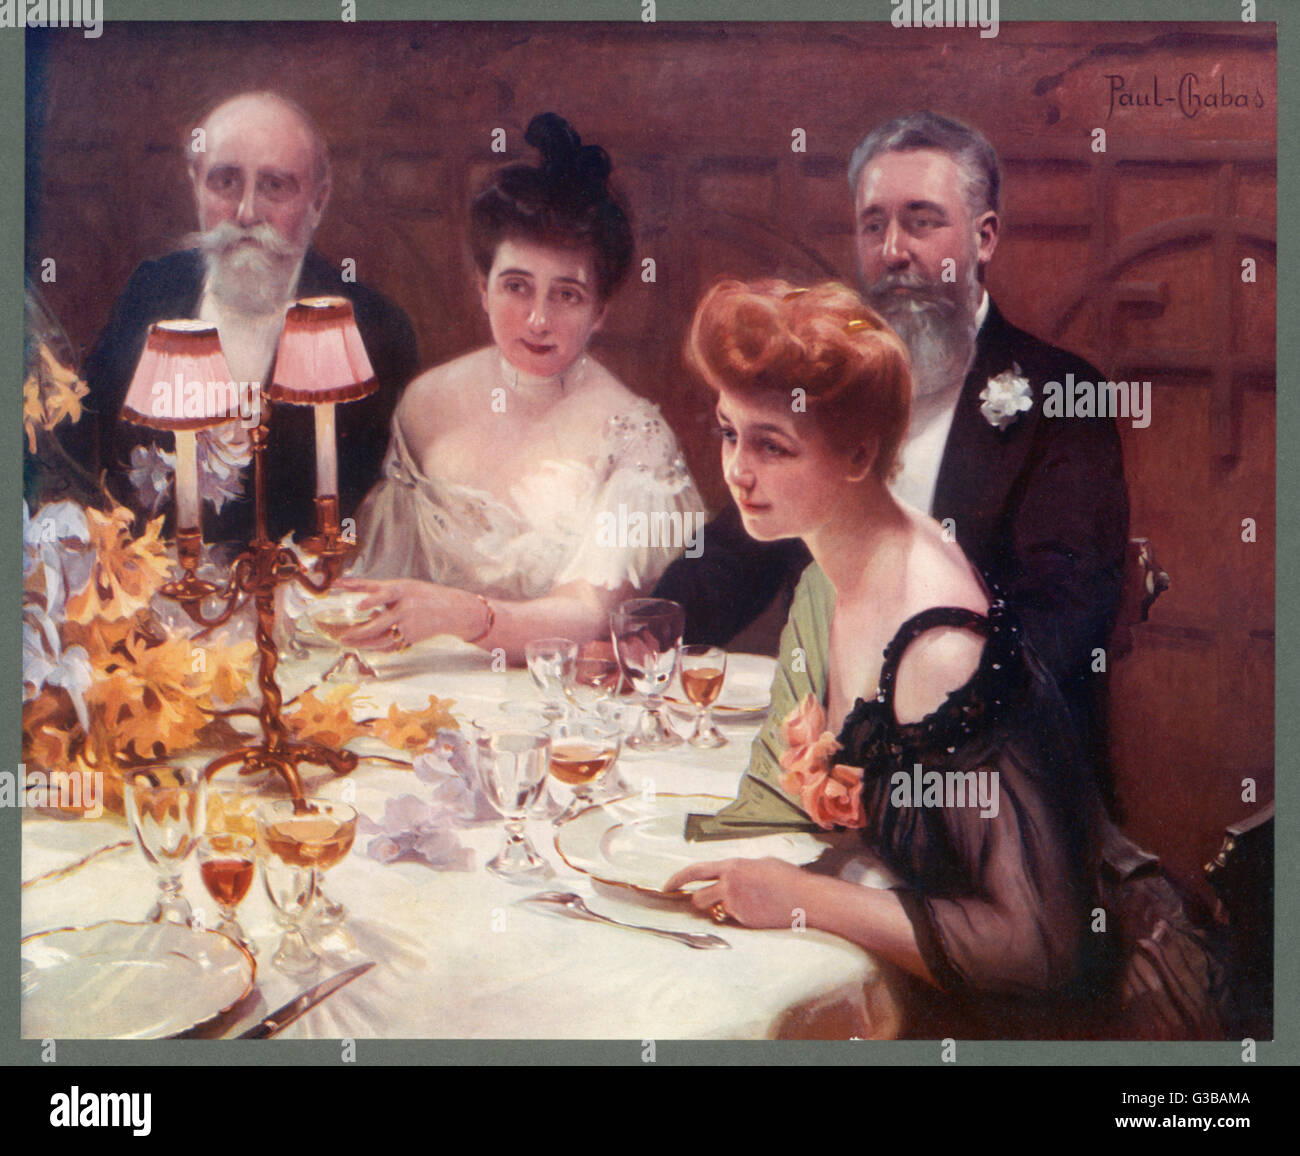 Una conversazione in corso durante una cena. Data: 1905 Foto Stock